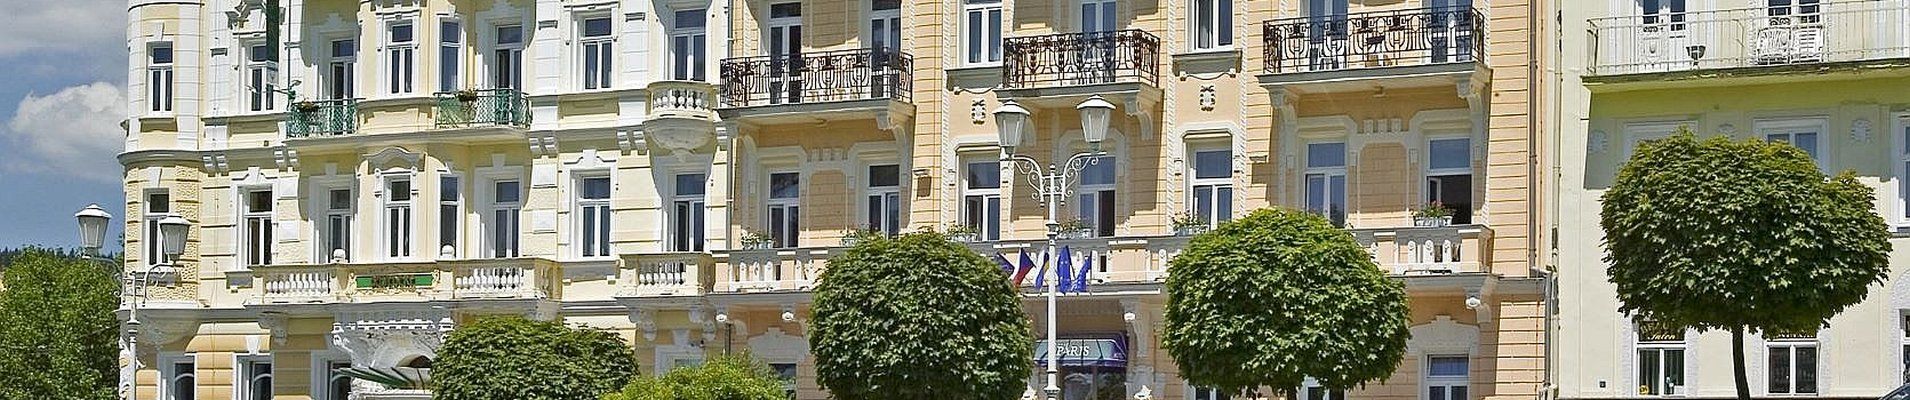 Hotel Paris - Kururlaub Marienbad mit Haustürabholung